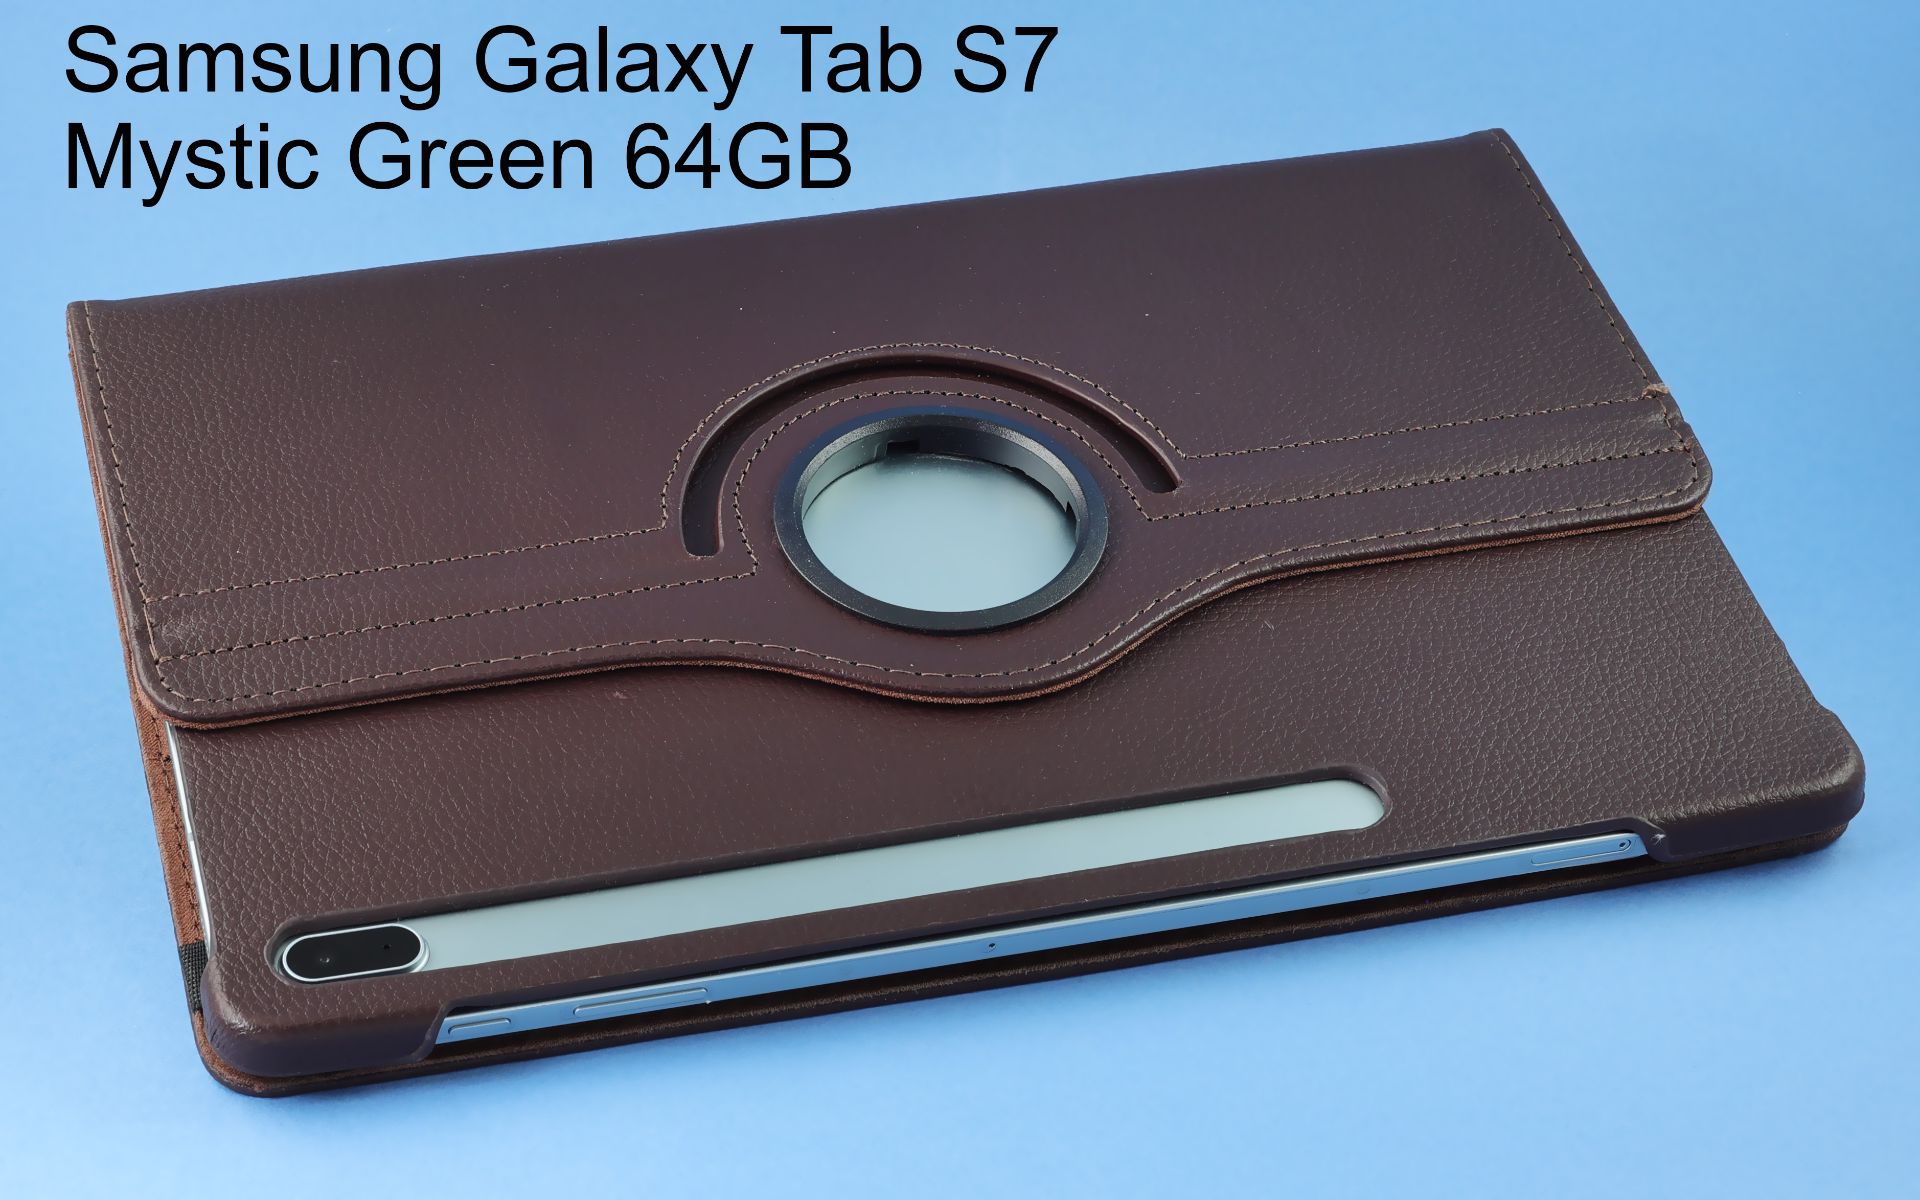 Samsung Galaxy Tab S7 Mystic Green 64GB mit Tastatur, Zubehoer und Karton